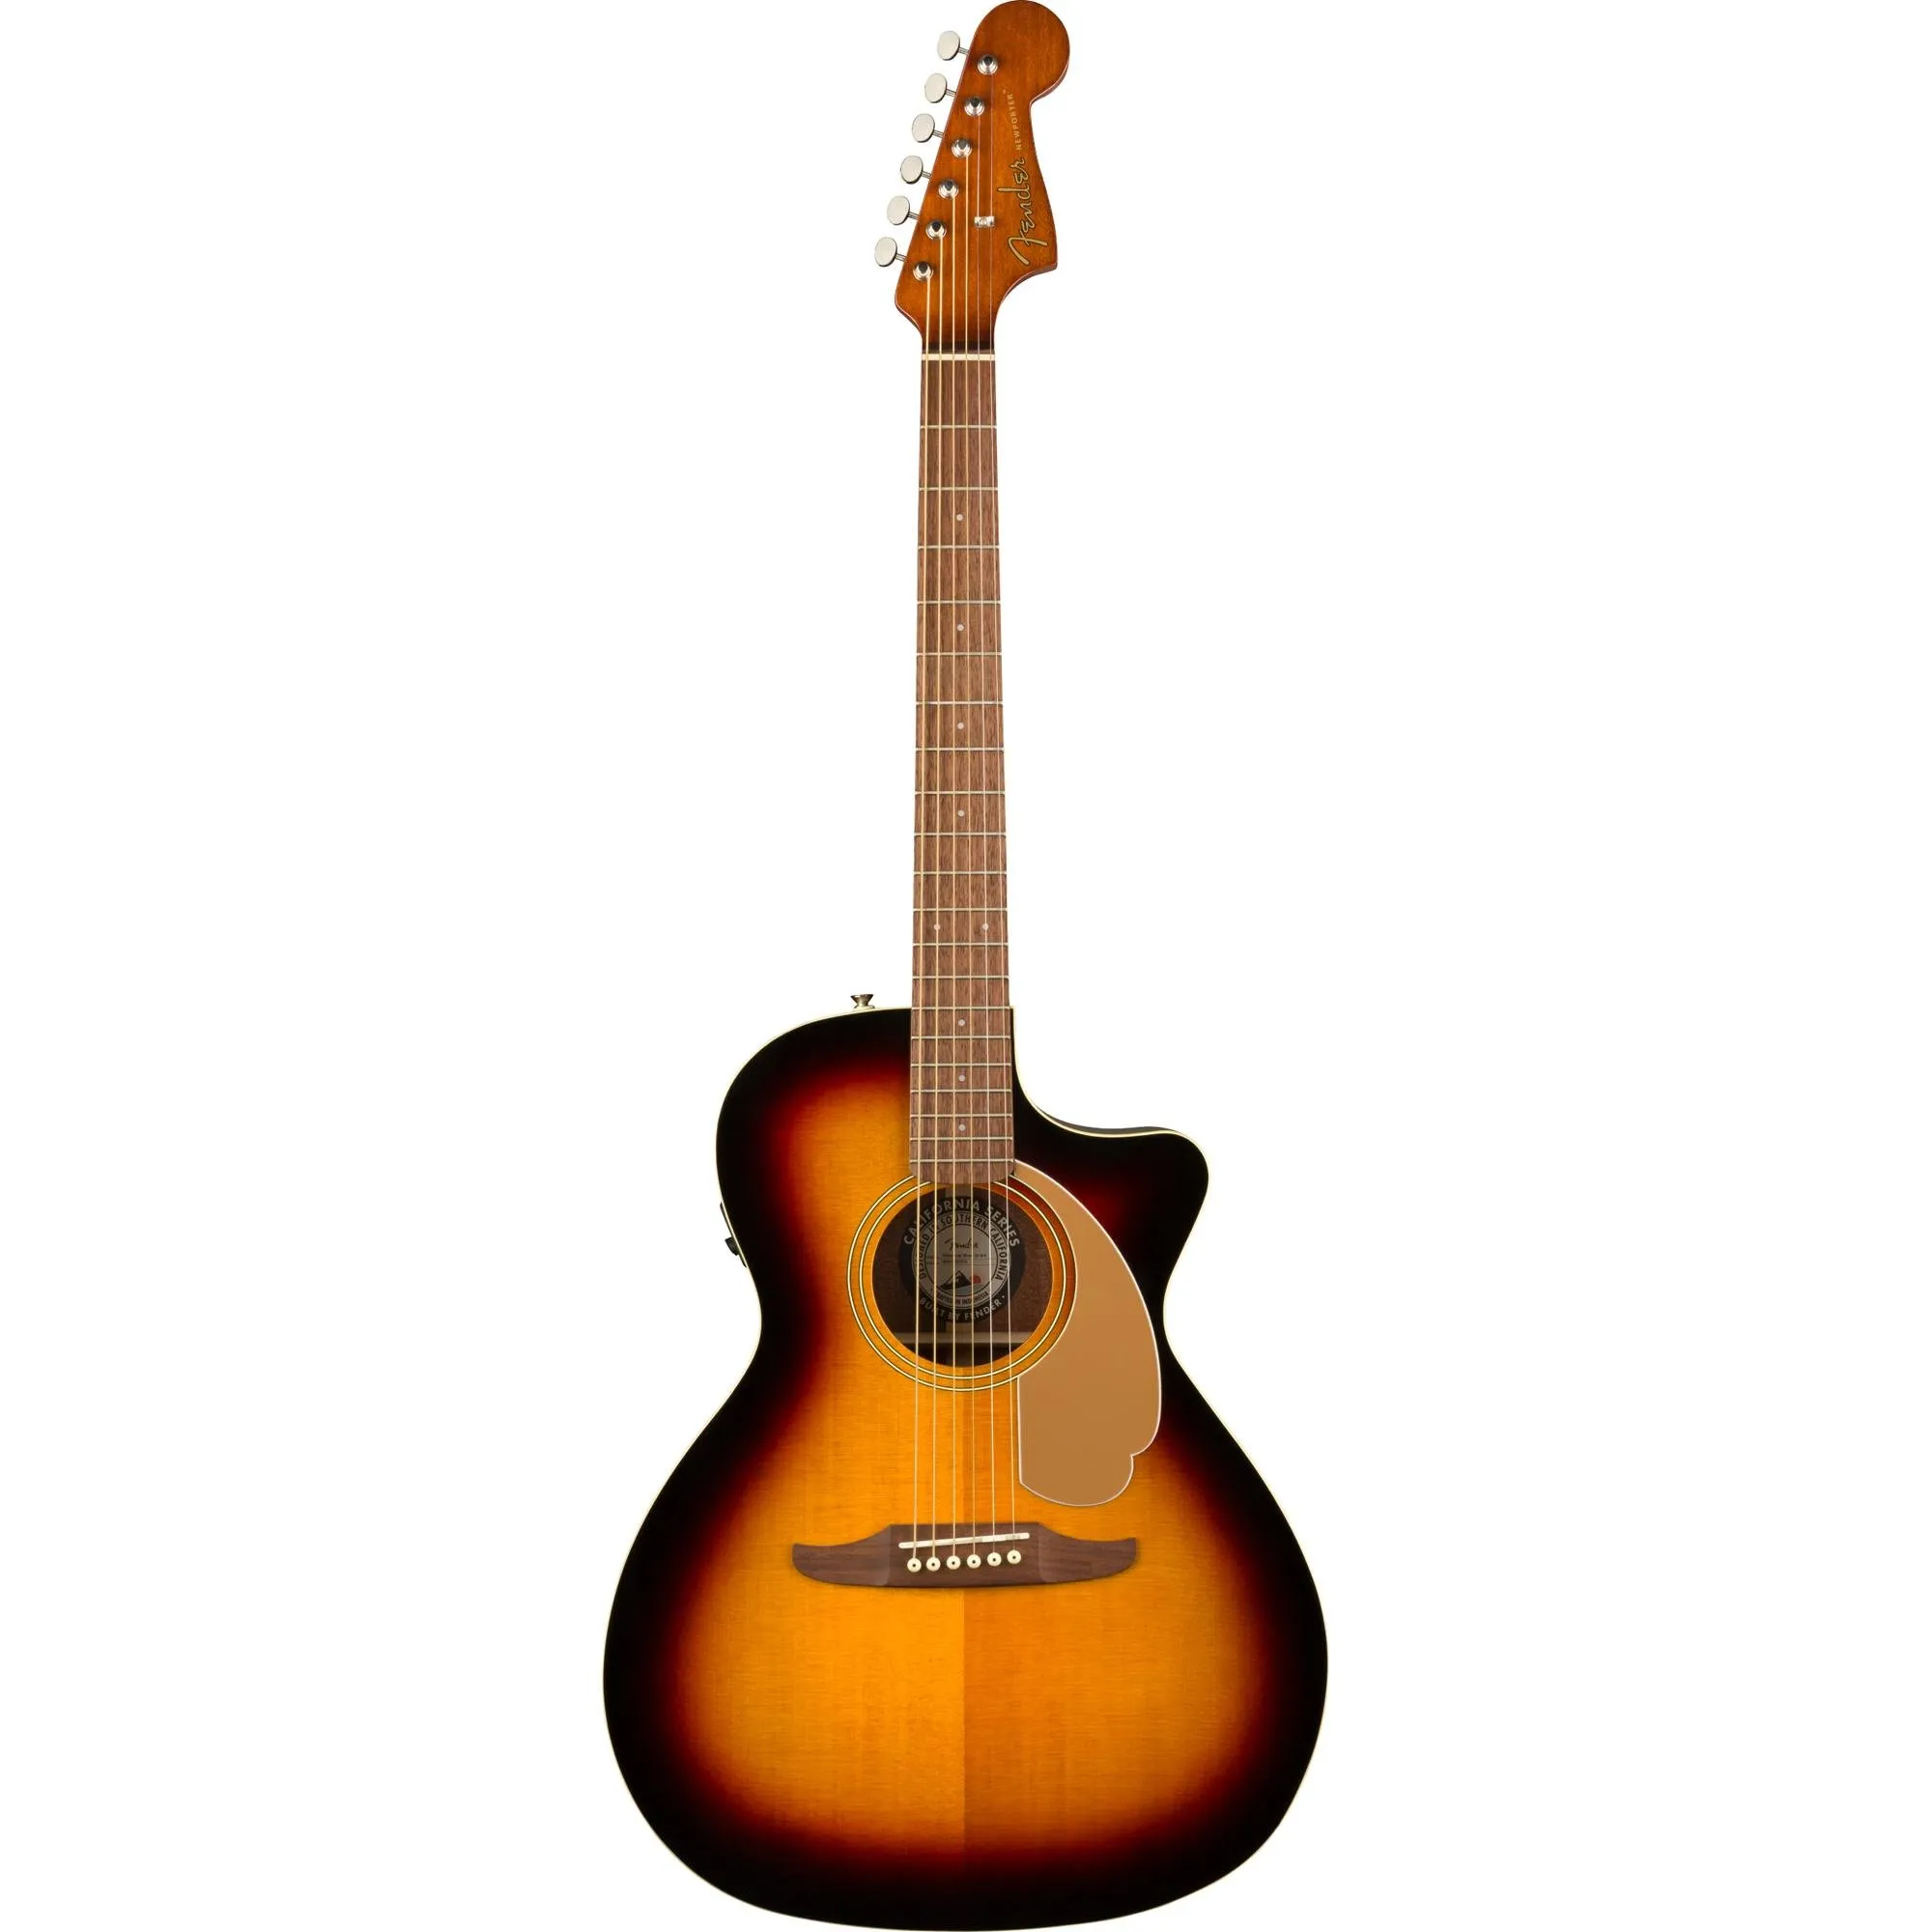 Violão Eletroacústico Fender Newporter Player Sunburst por 2.499,99 à vista no boleto/pix ou parcele em até 12x sem juros. Compre na loja Mundomax!